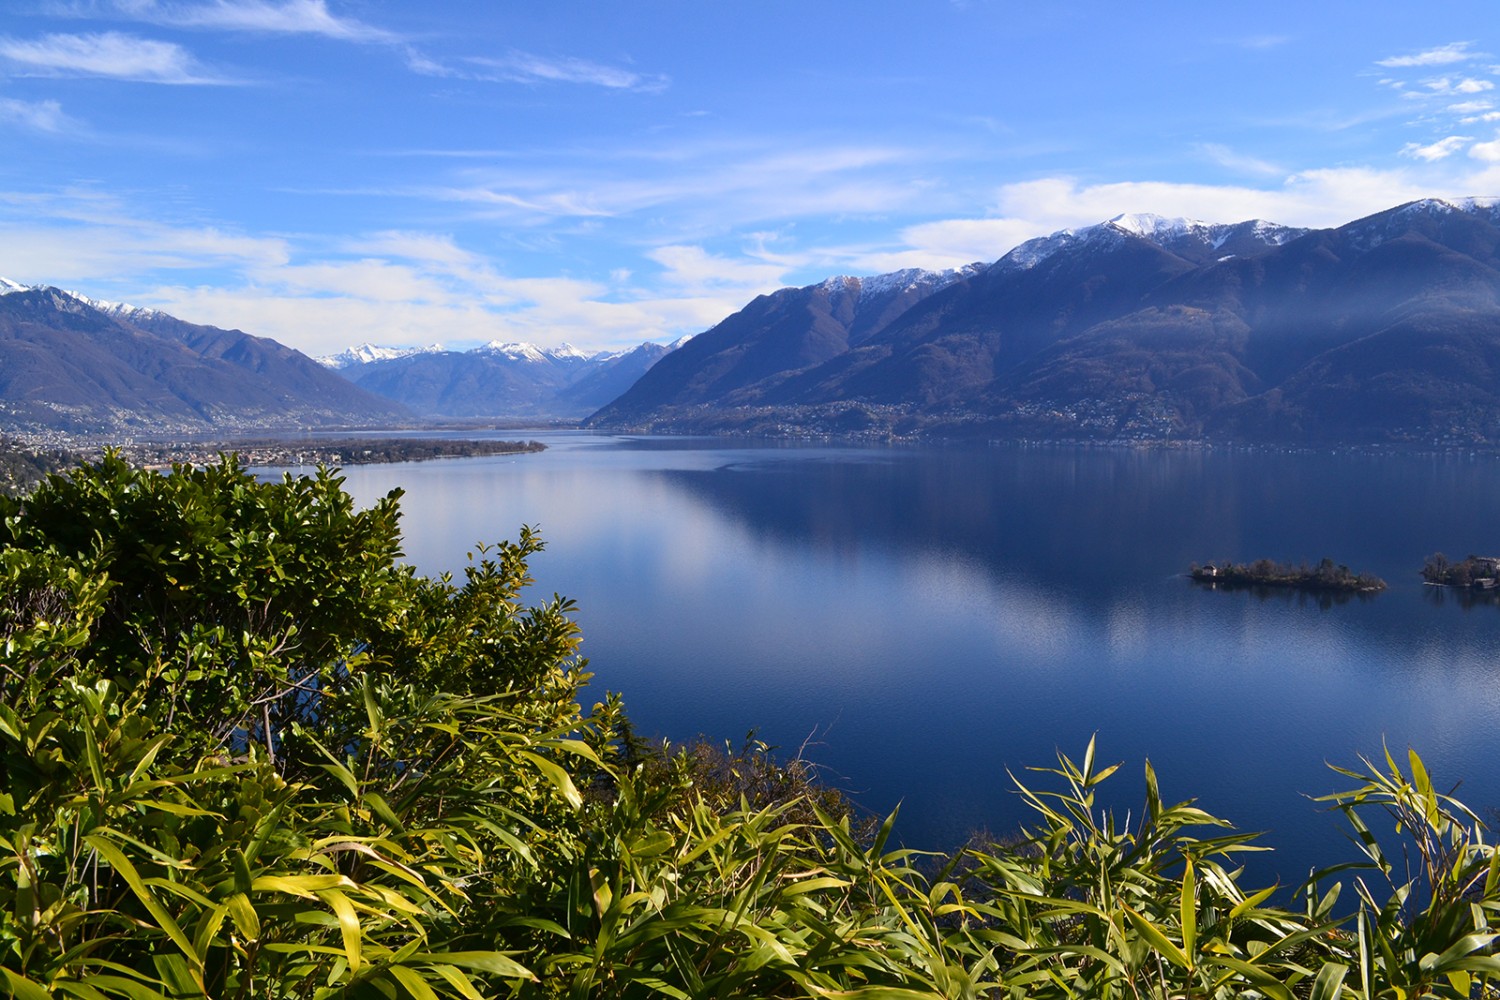 Blick von Ronco sopra Ascona über den Lago Maggiore hinweg Richtung Ascona.
Bilder: Sabine Joss